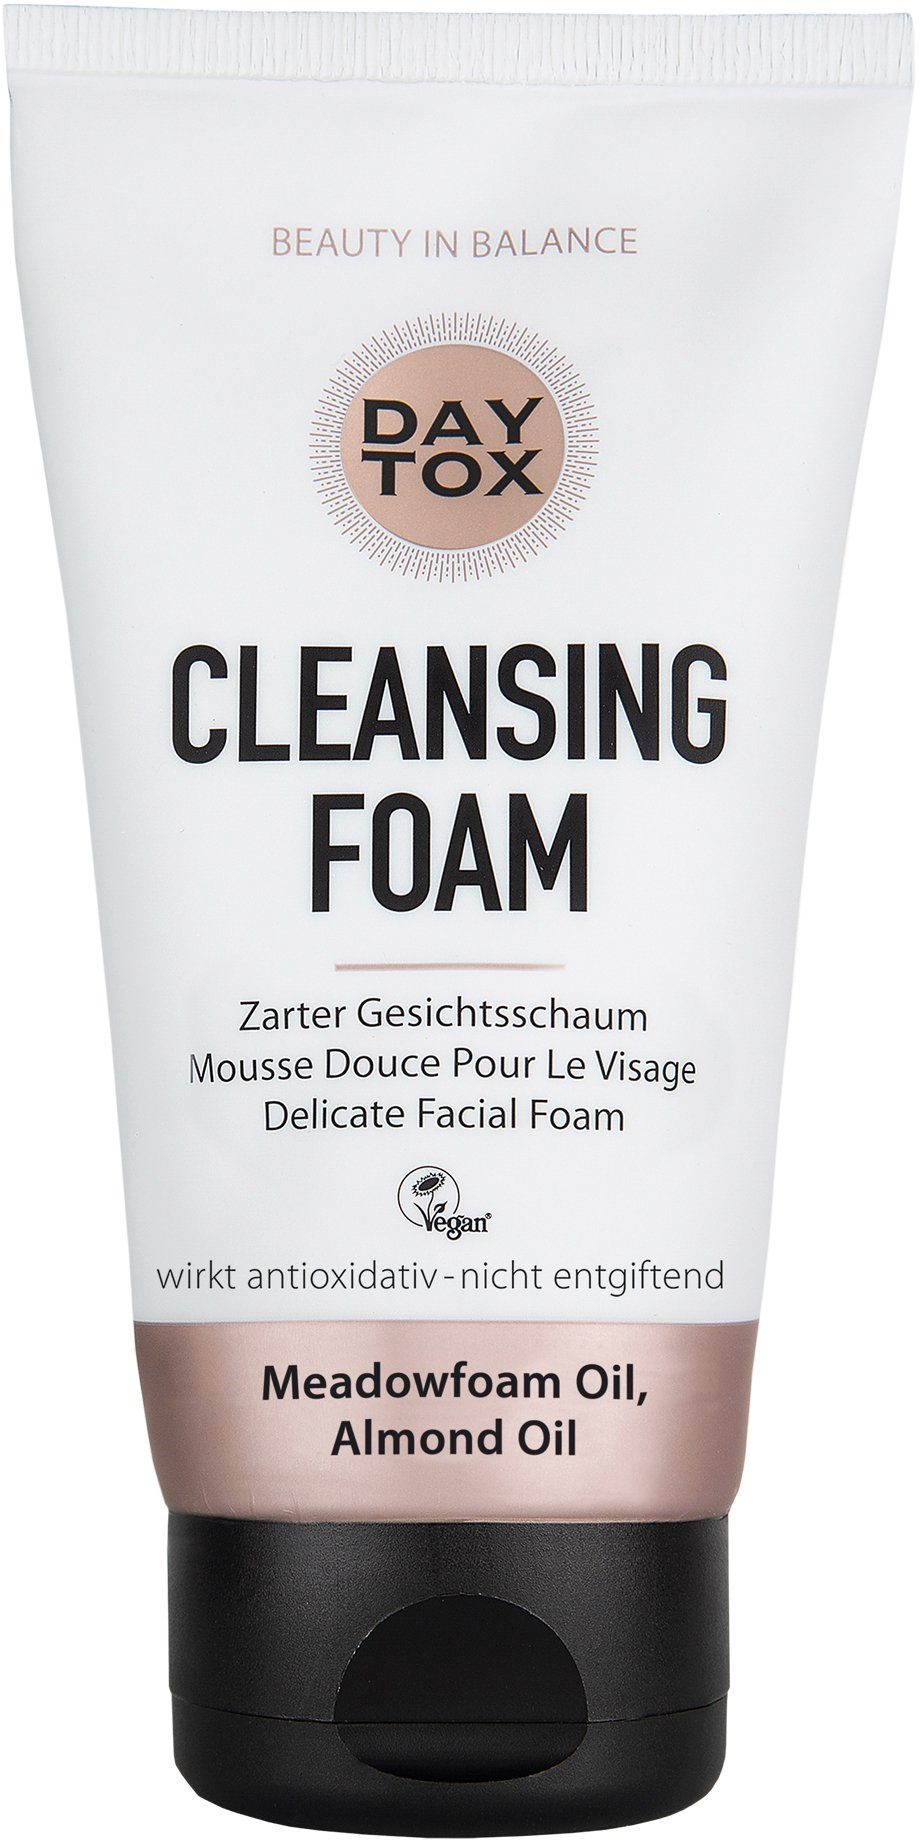 Damen Gesichtspflege DAYTOX Gesichts-Reinigungsschaum Cleansing Foam